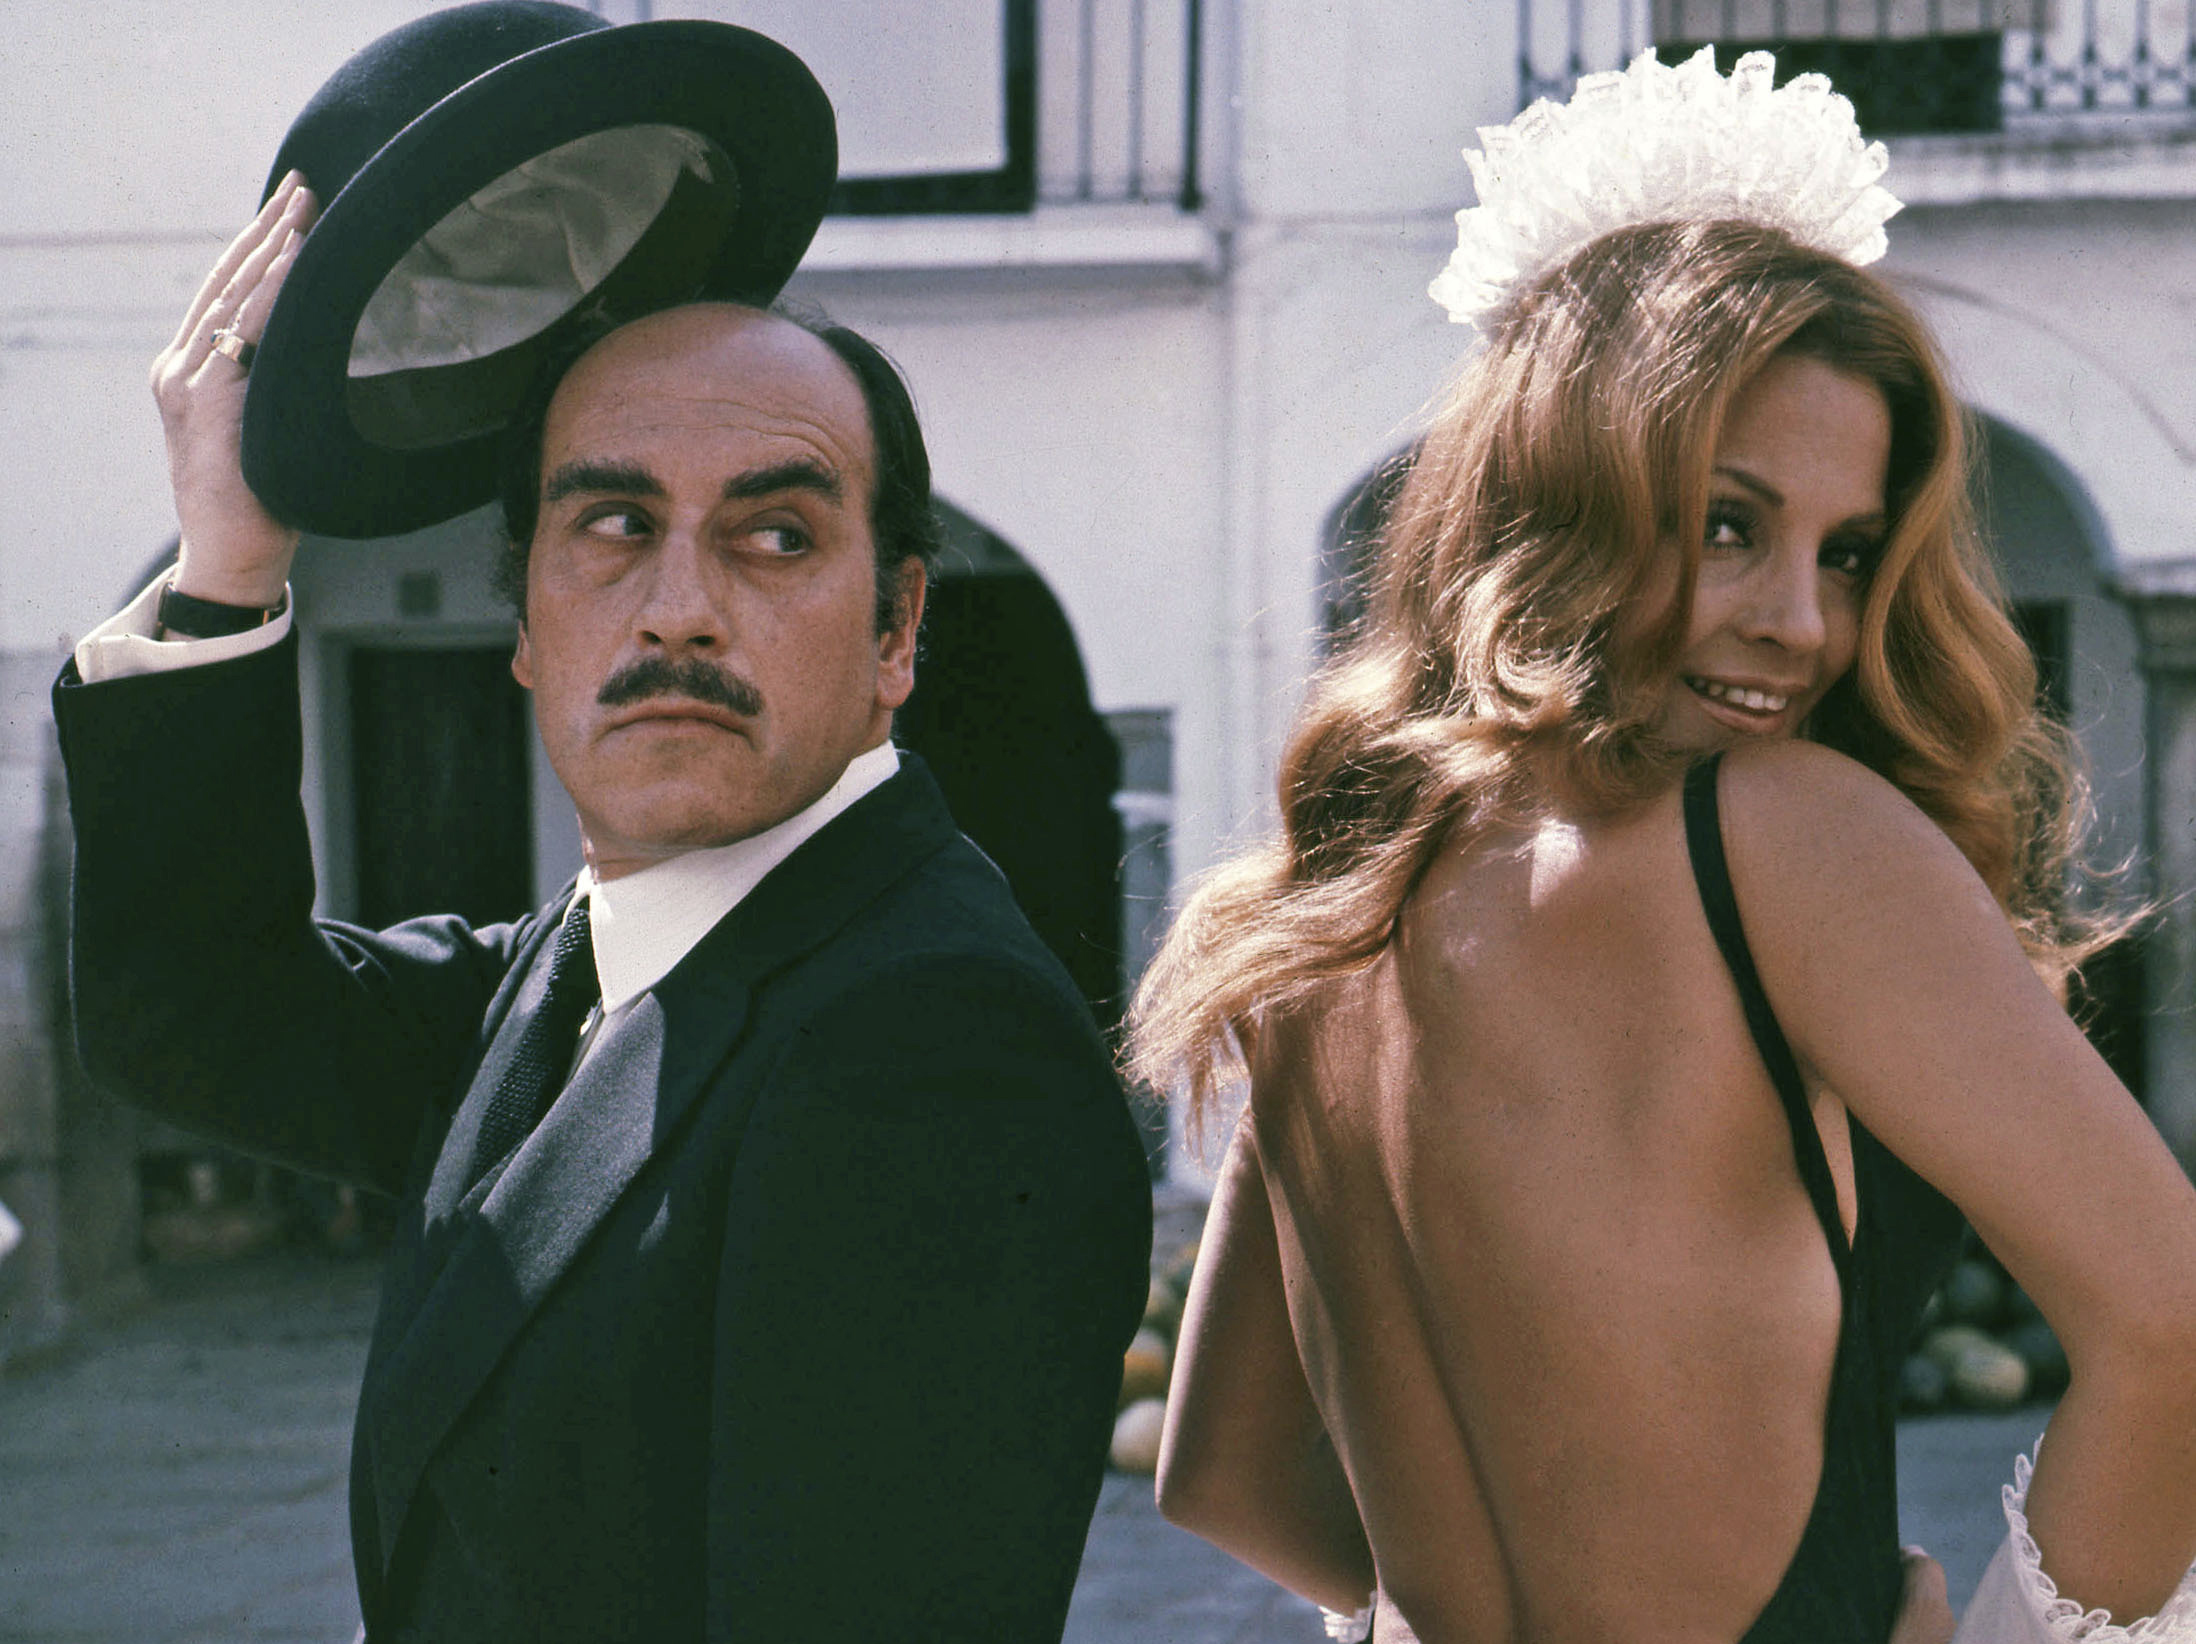 Ms. Sevilla and José Luis López Vázquez filming “La cera virgen,” a 1972 musical comedy shot in Zafra, Spain.